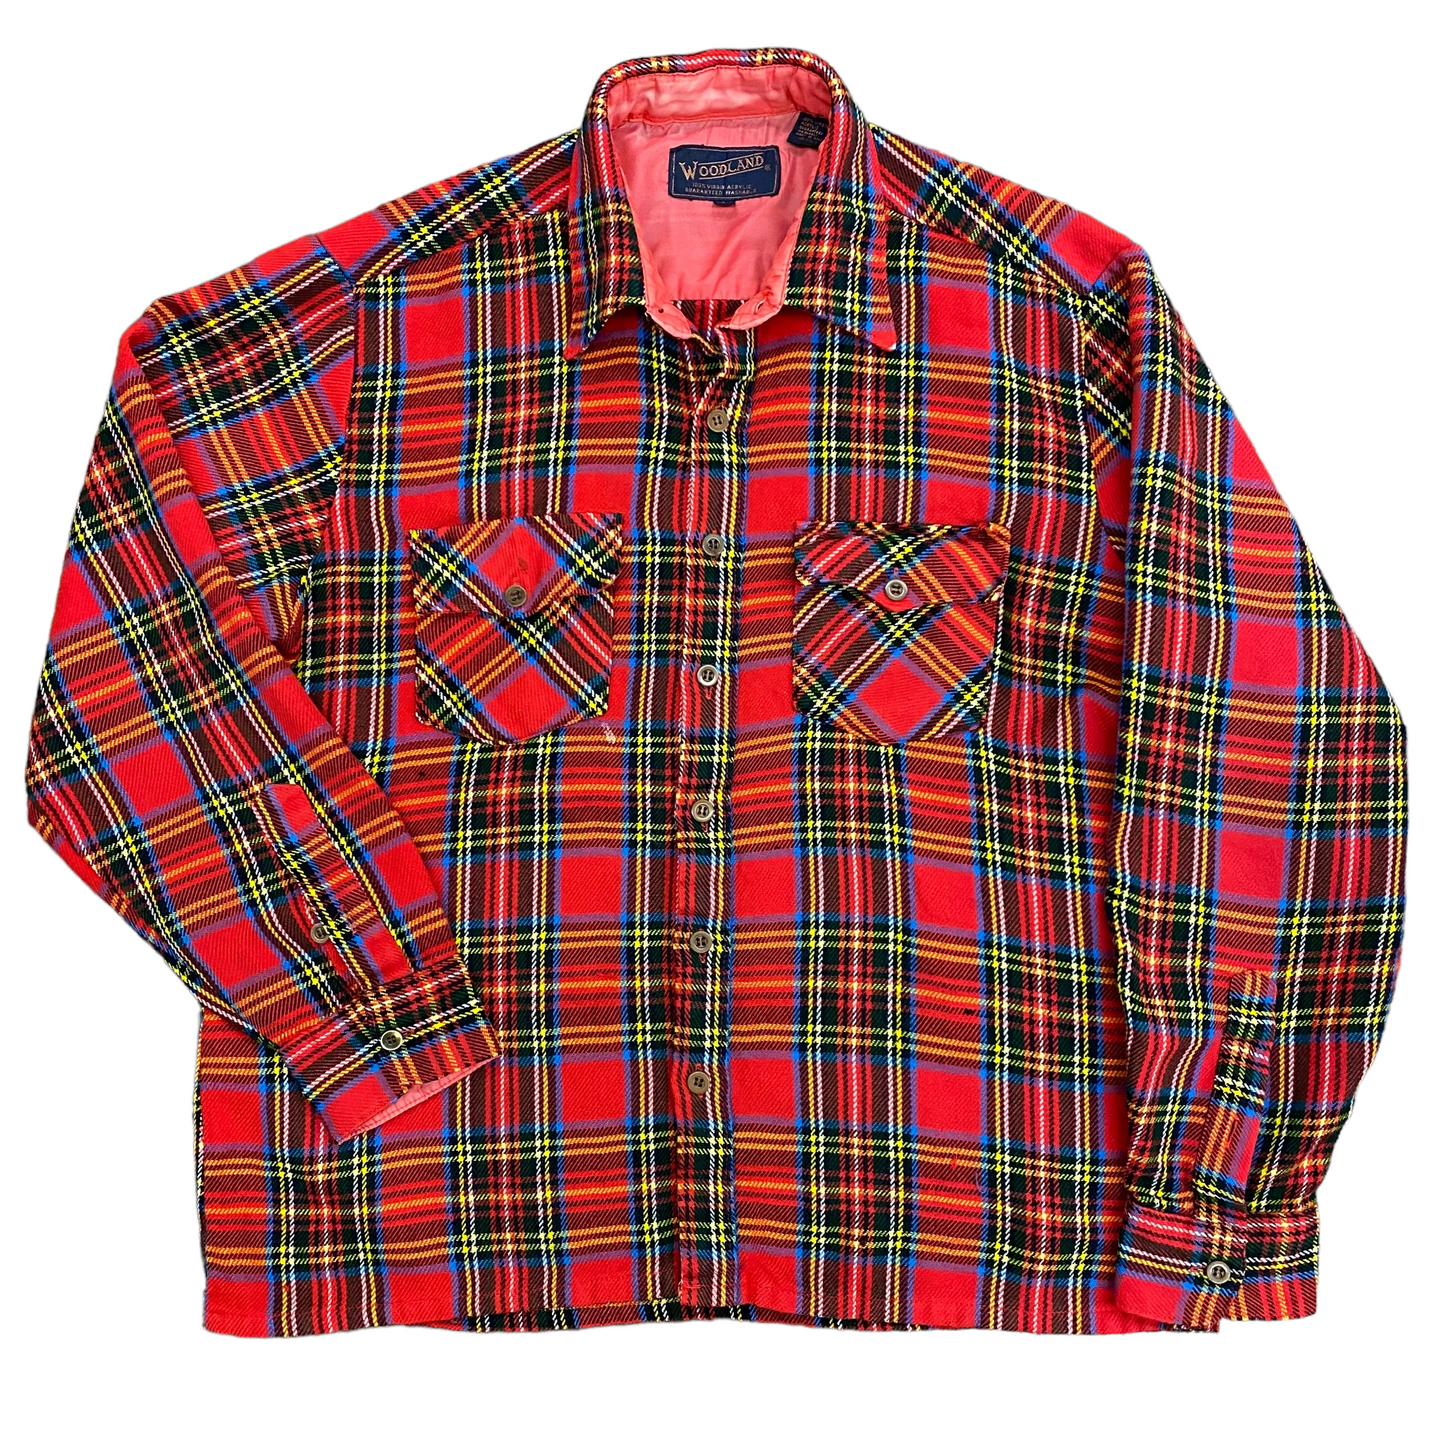 Vintage 90s Woodland Flannel Shirt - Size Large